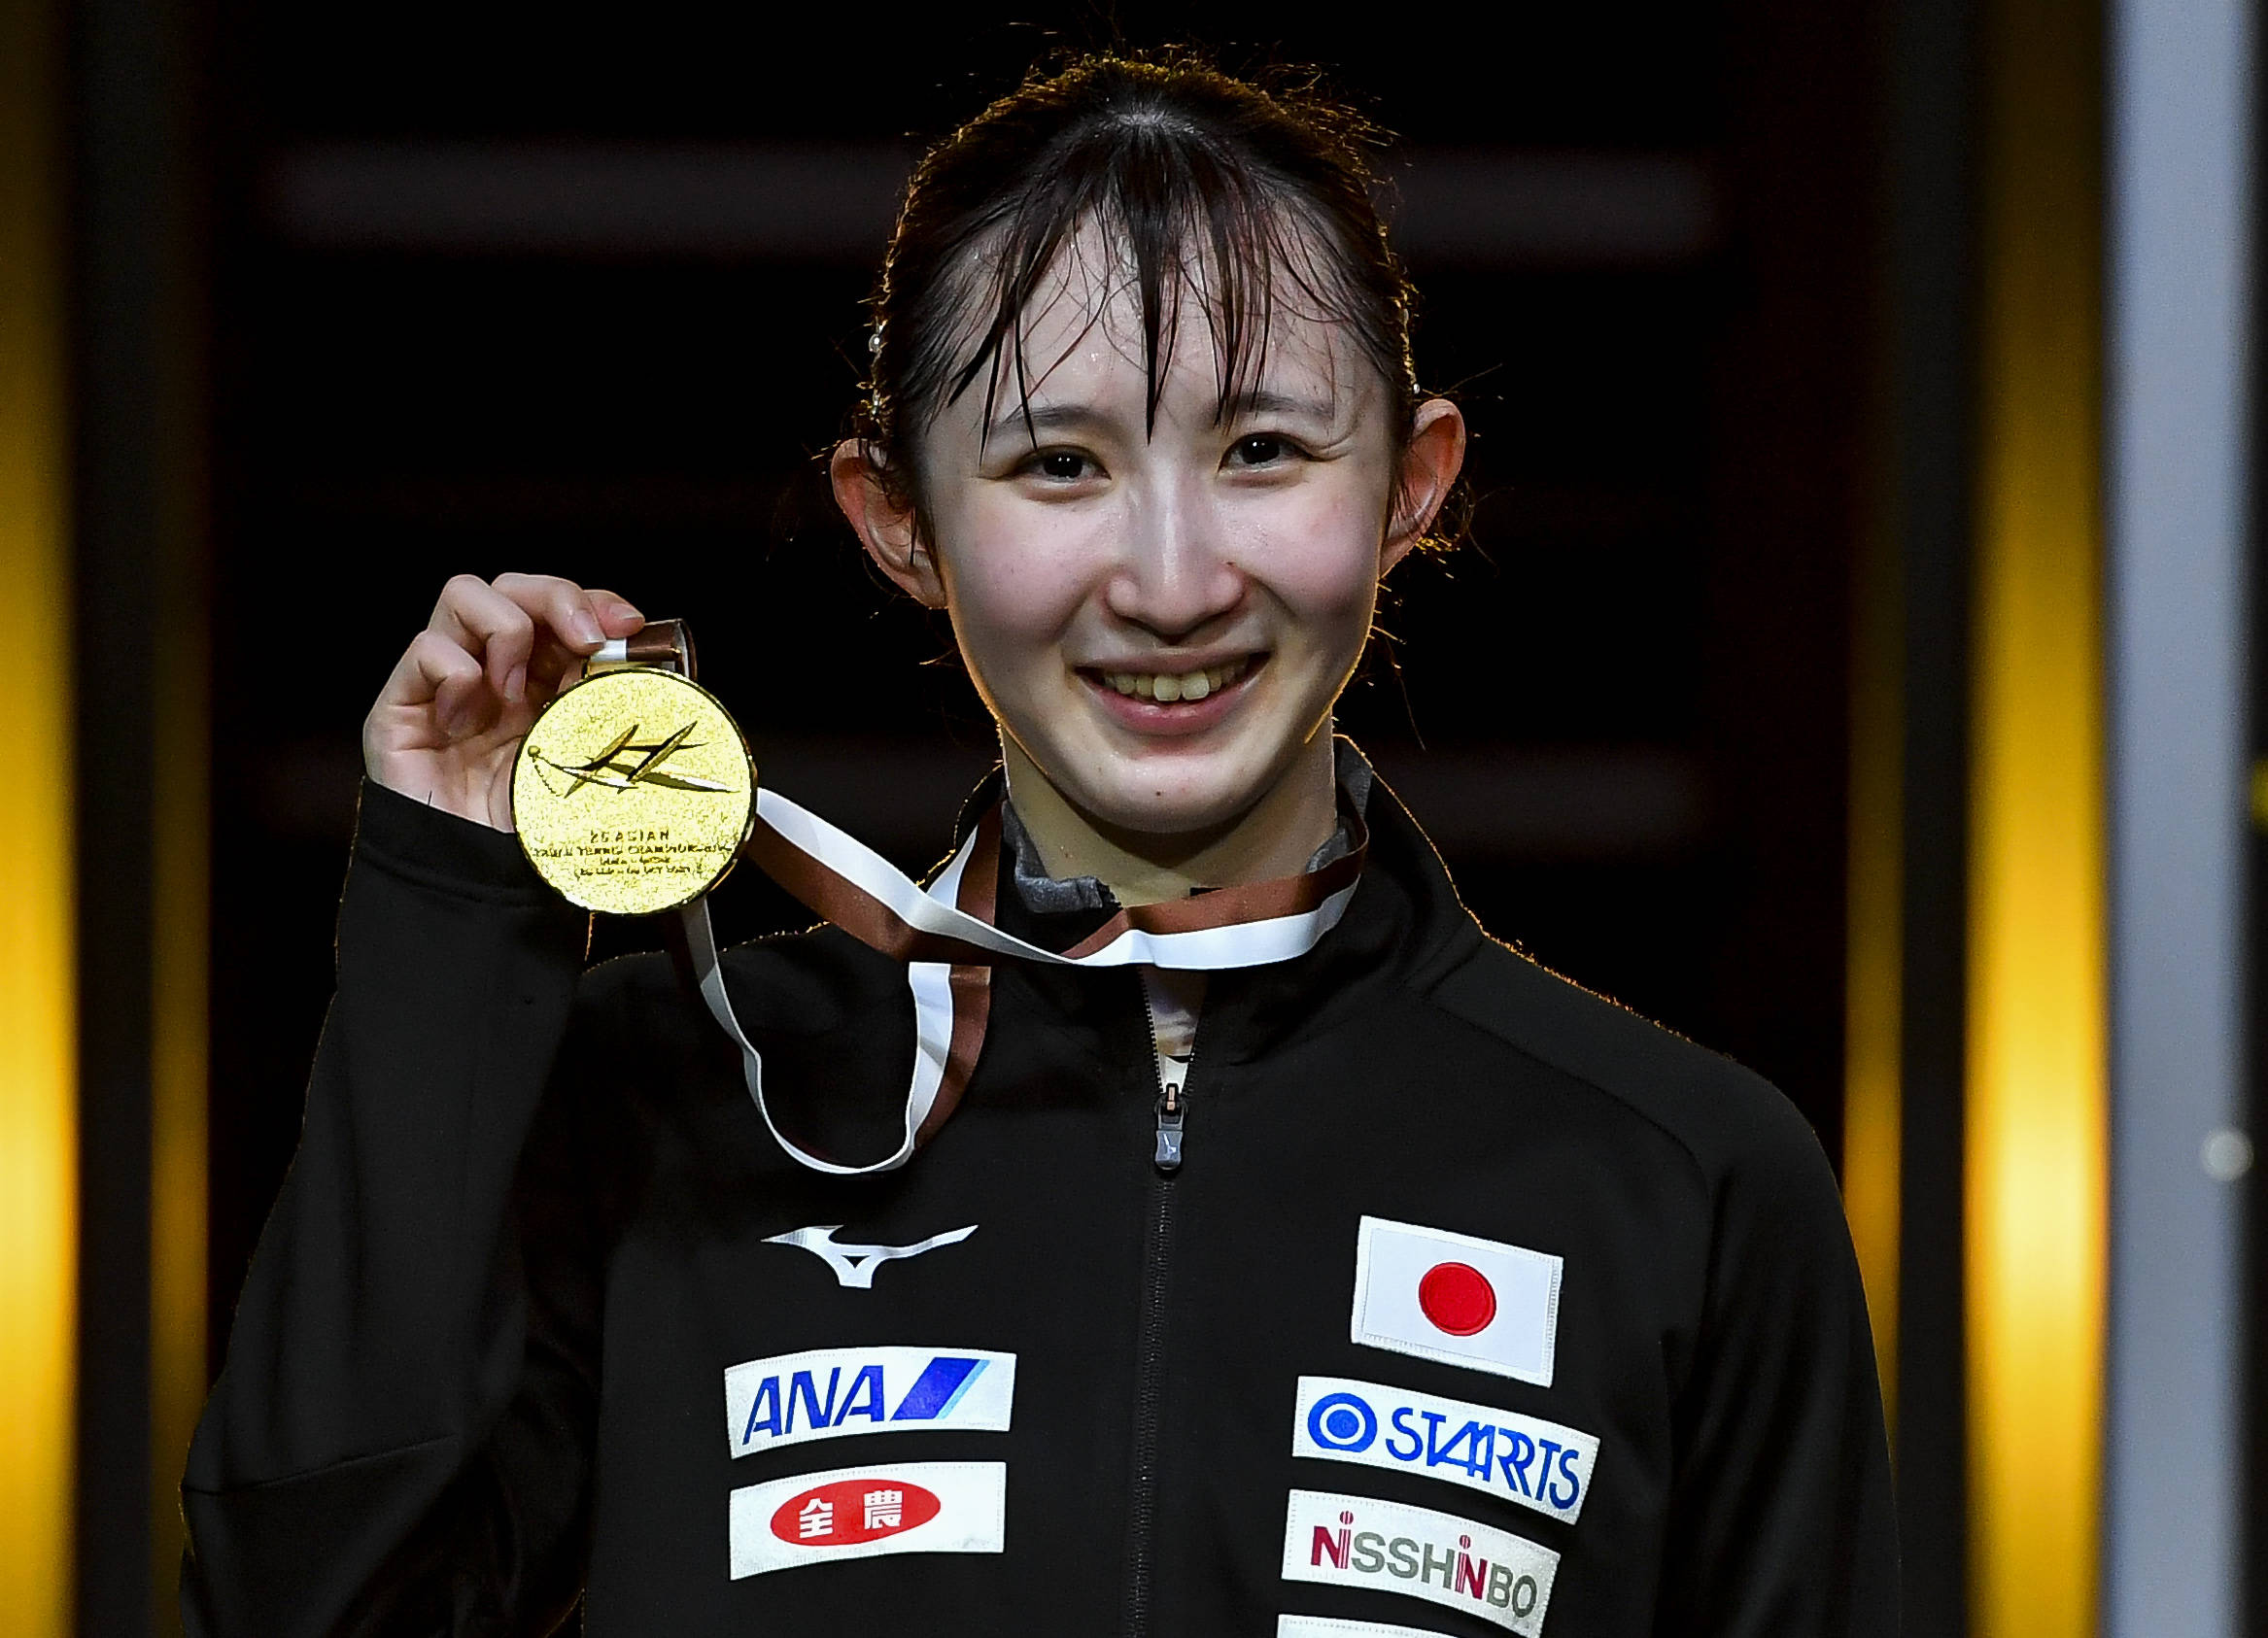 乒乓球亚锦赛女子单打决赛中,日本选手早田希娜以3比1战胜韩国选手